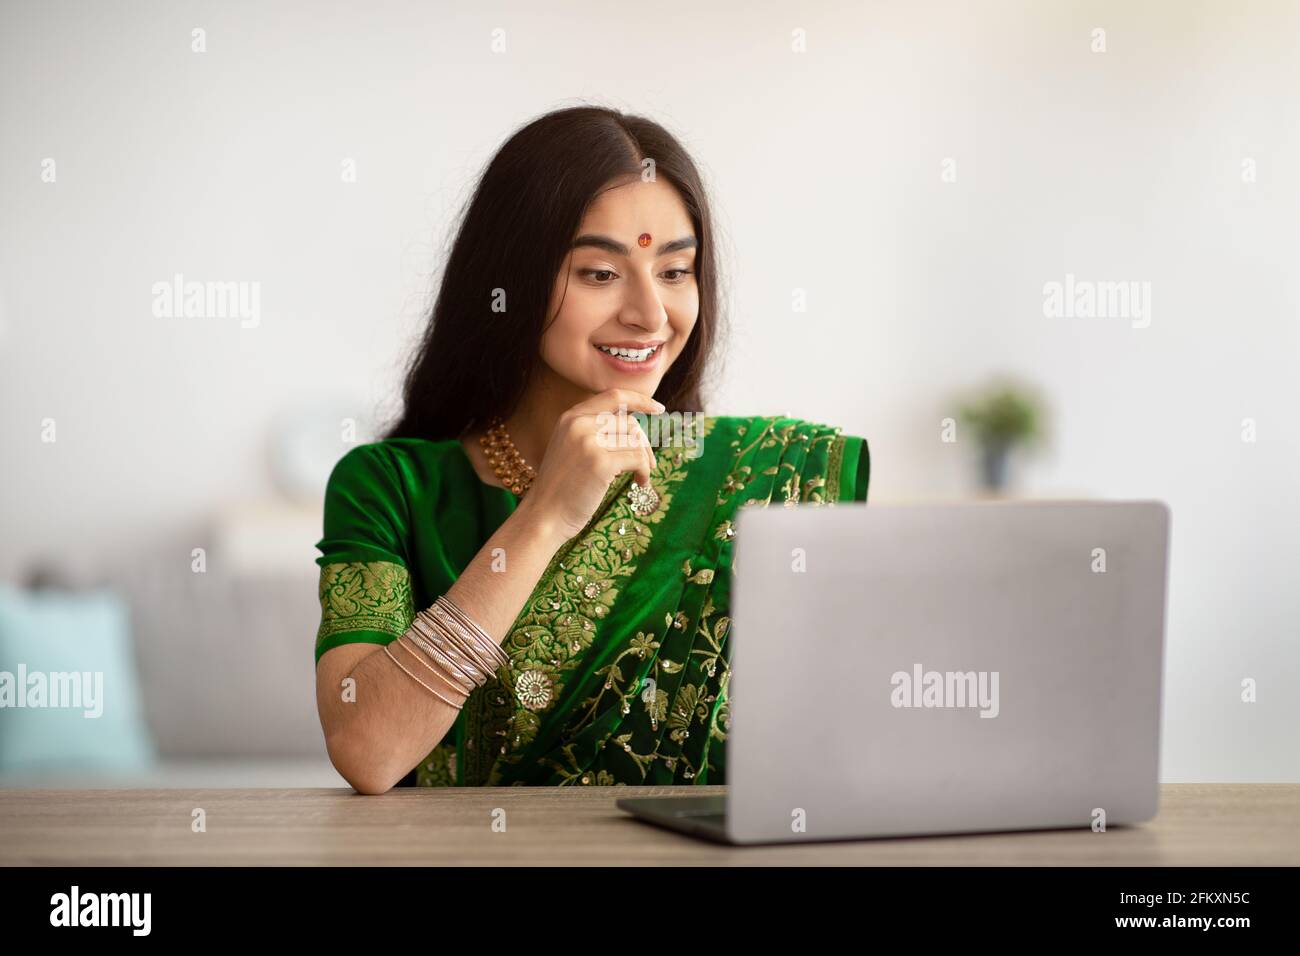 Jeune femme indienne dans la belle robe sari étudiant ou travaillant en ligne sur ordinateur portable, à l'intérieur Banque D'Images